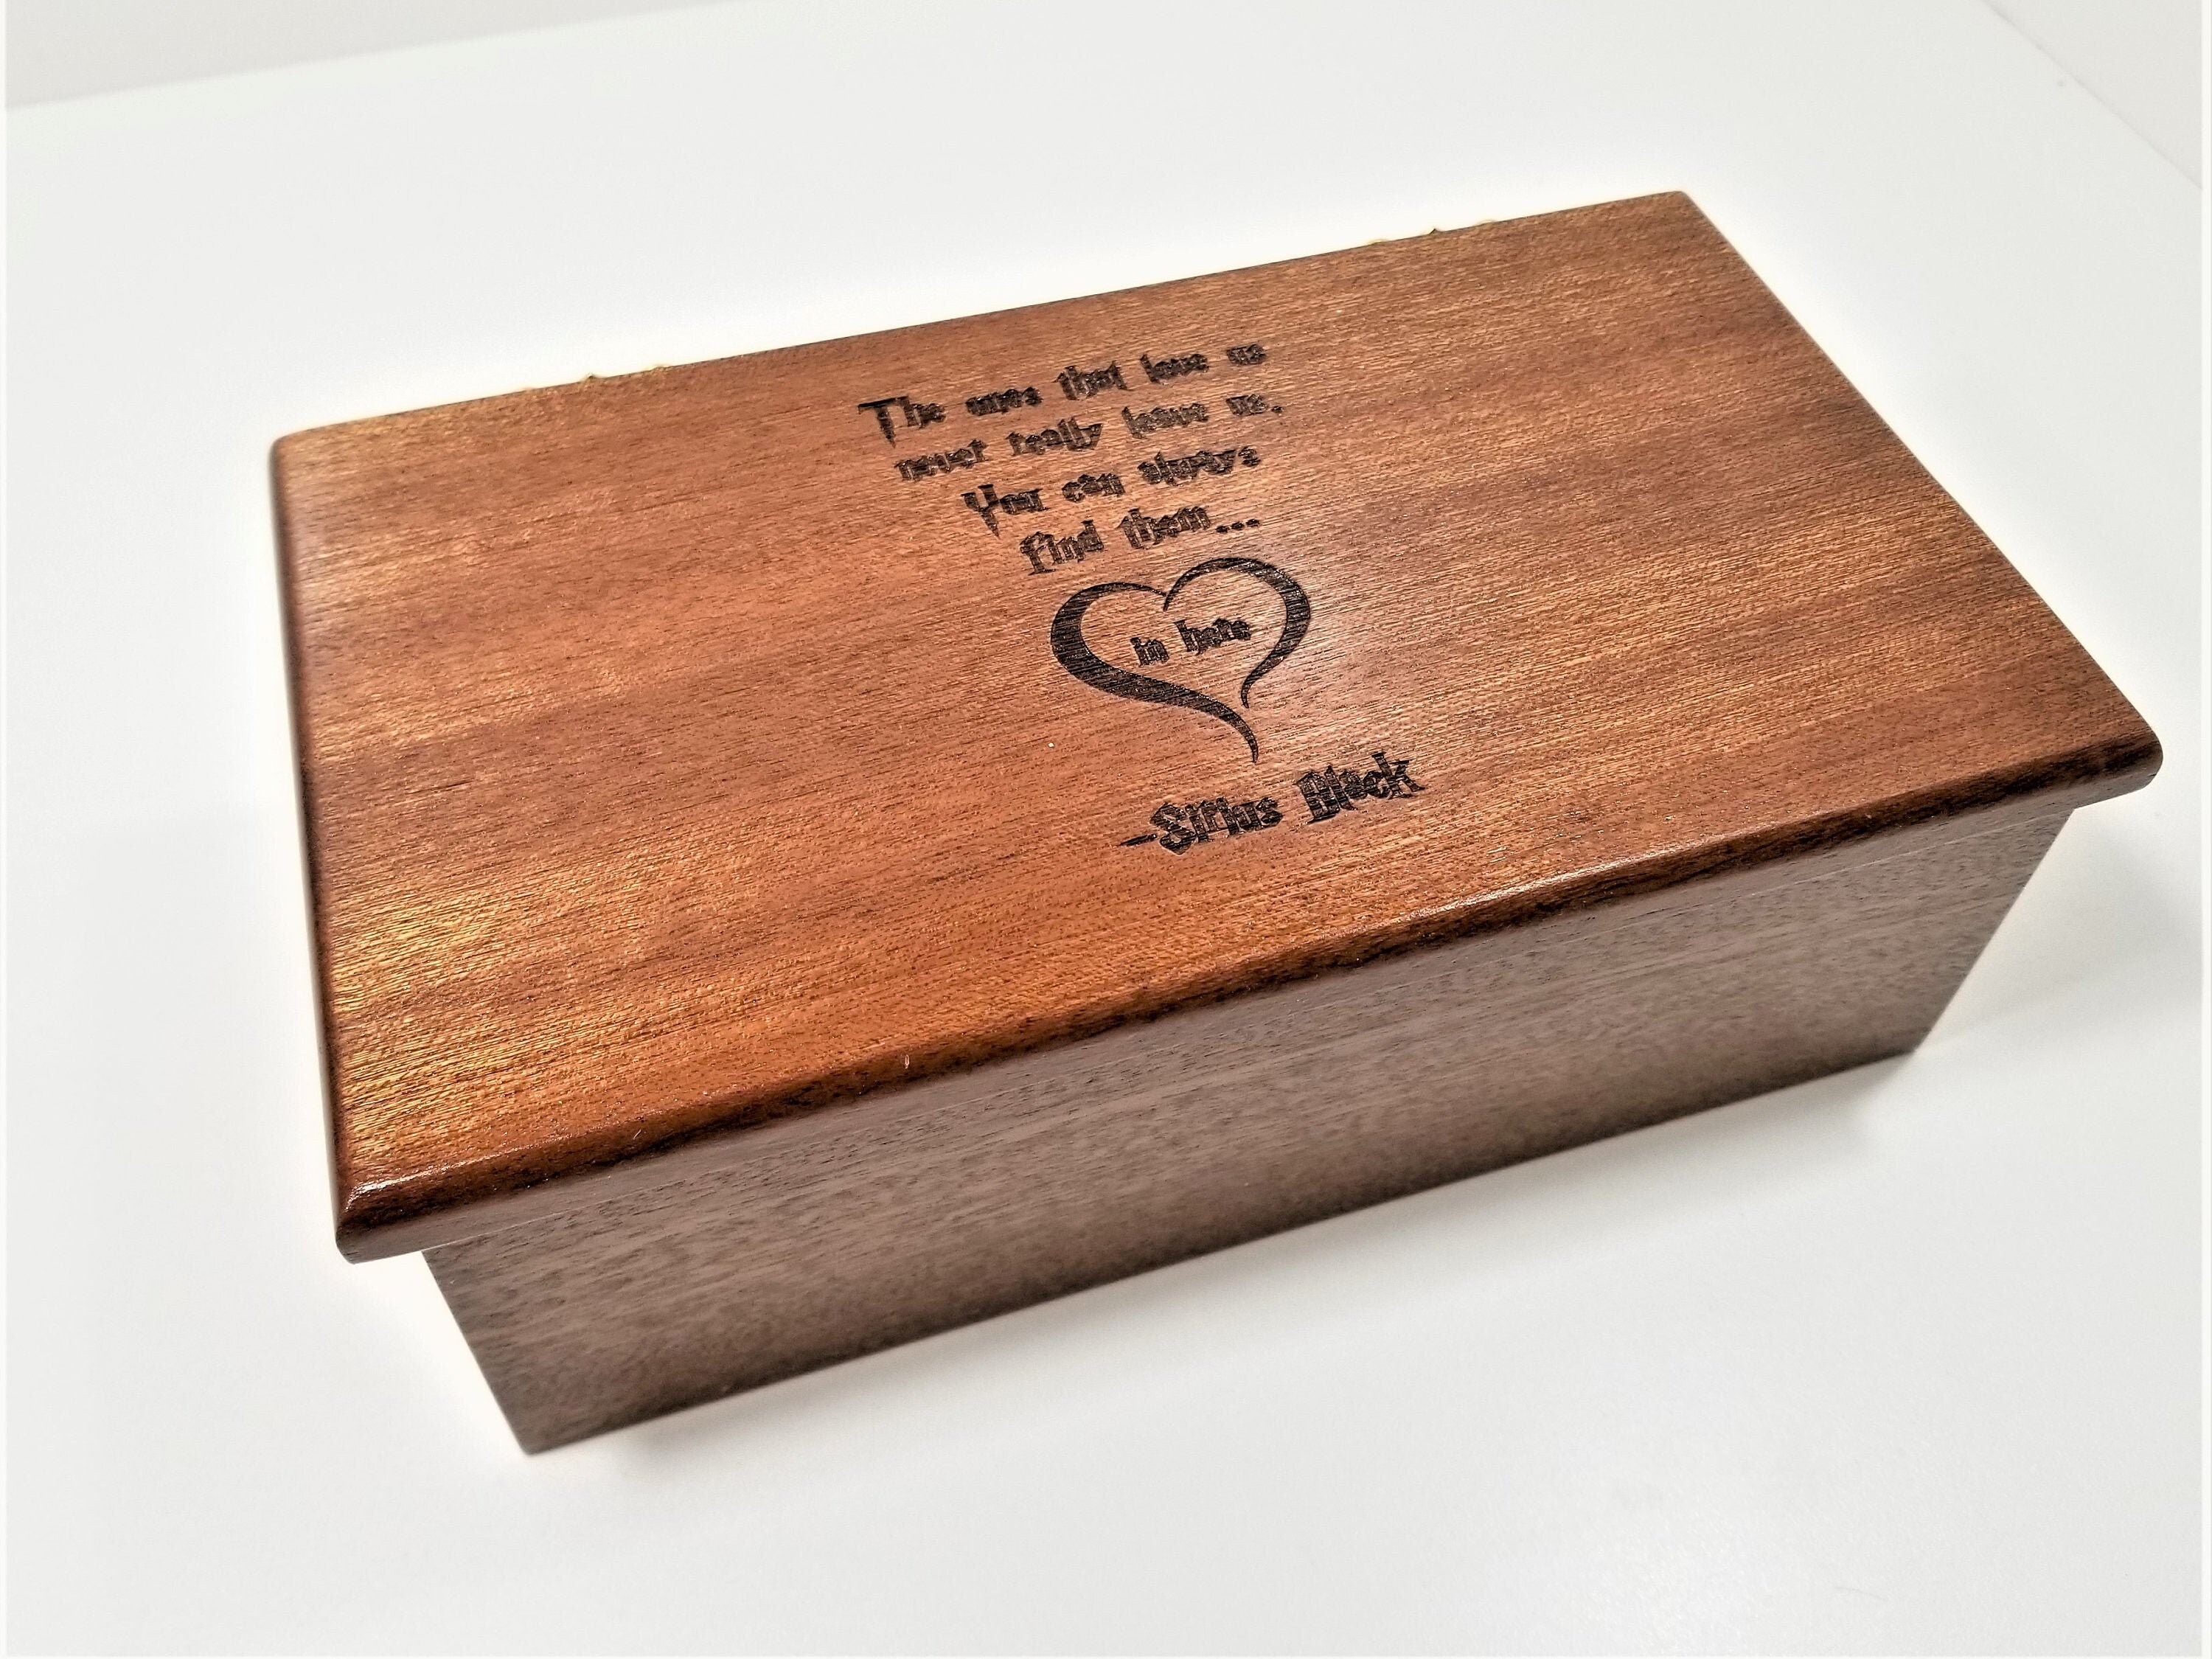 Harry Potter Game Thrones Spieldose Holz Spieluhr Music Box Kinder Geschenk Gift 